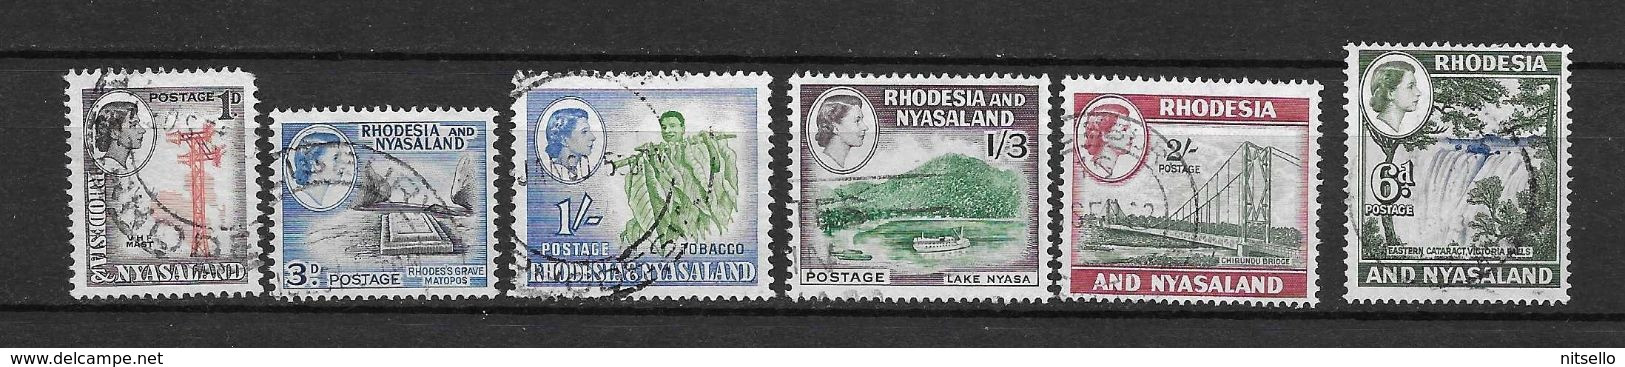 LOTE 2219A  ///   (C012)  RODESIA & NYASALAND          ¡¡¡¡¡ LIQUIDATION!!!!! - Rhodésie & Nyasaland (1954-1963)